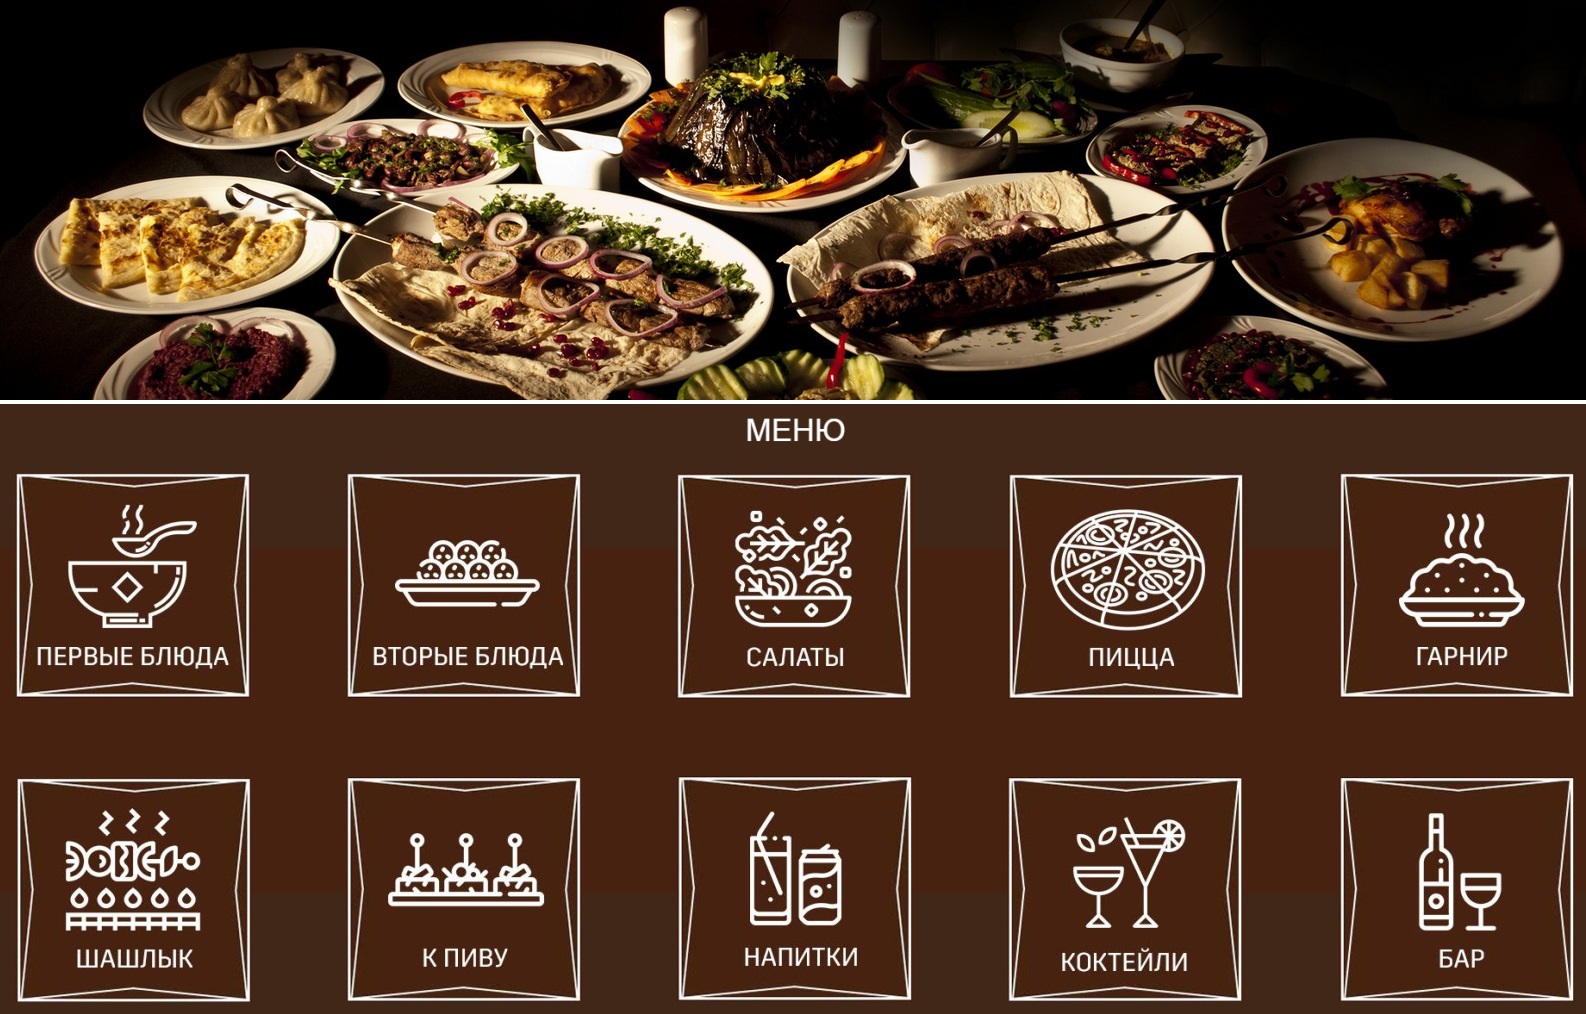 Arabian palace edappally menu